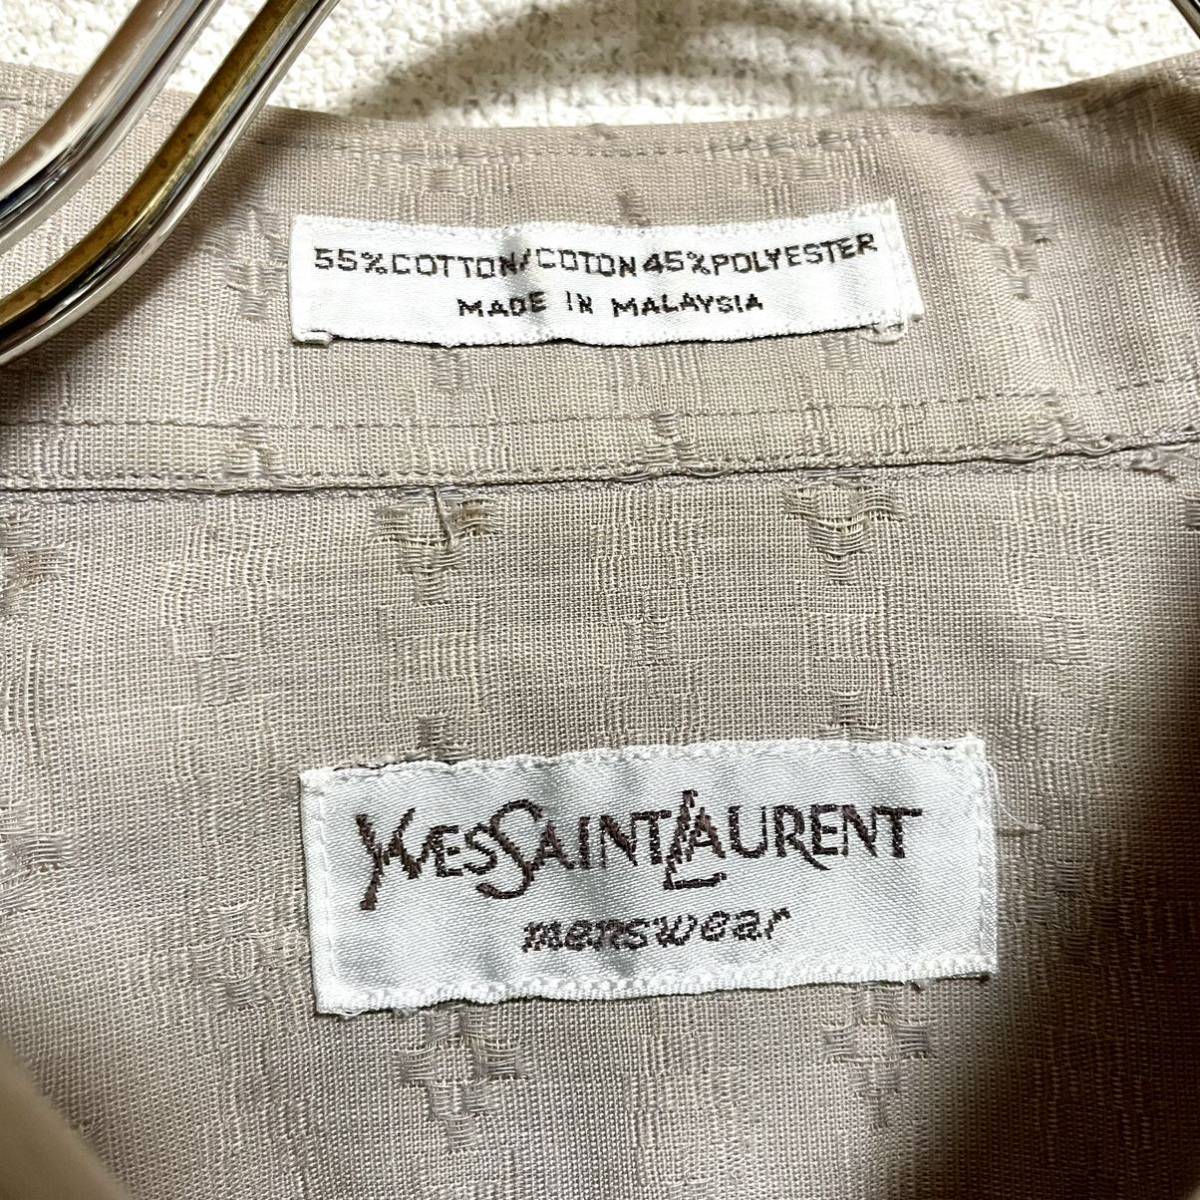  Yves Saint-Laurent Yves Saint Laurent рубашка с длинным рукавом длинный рукав рубашка общий рисунок серый бежевый мужской .. размер L соответствует *BH